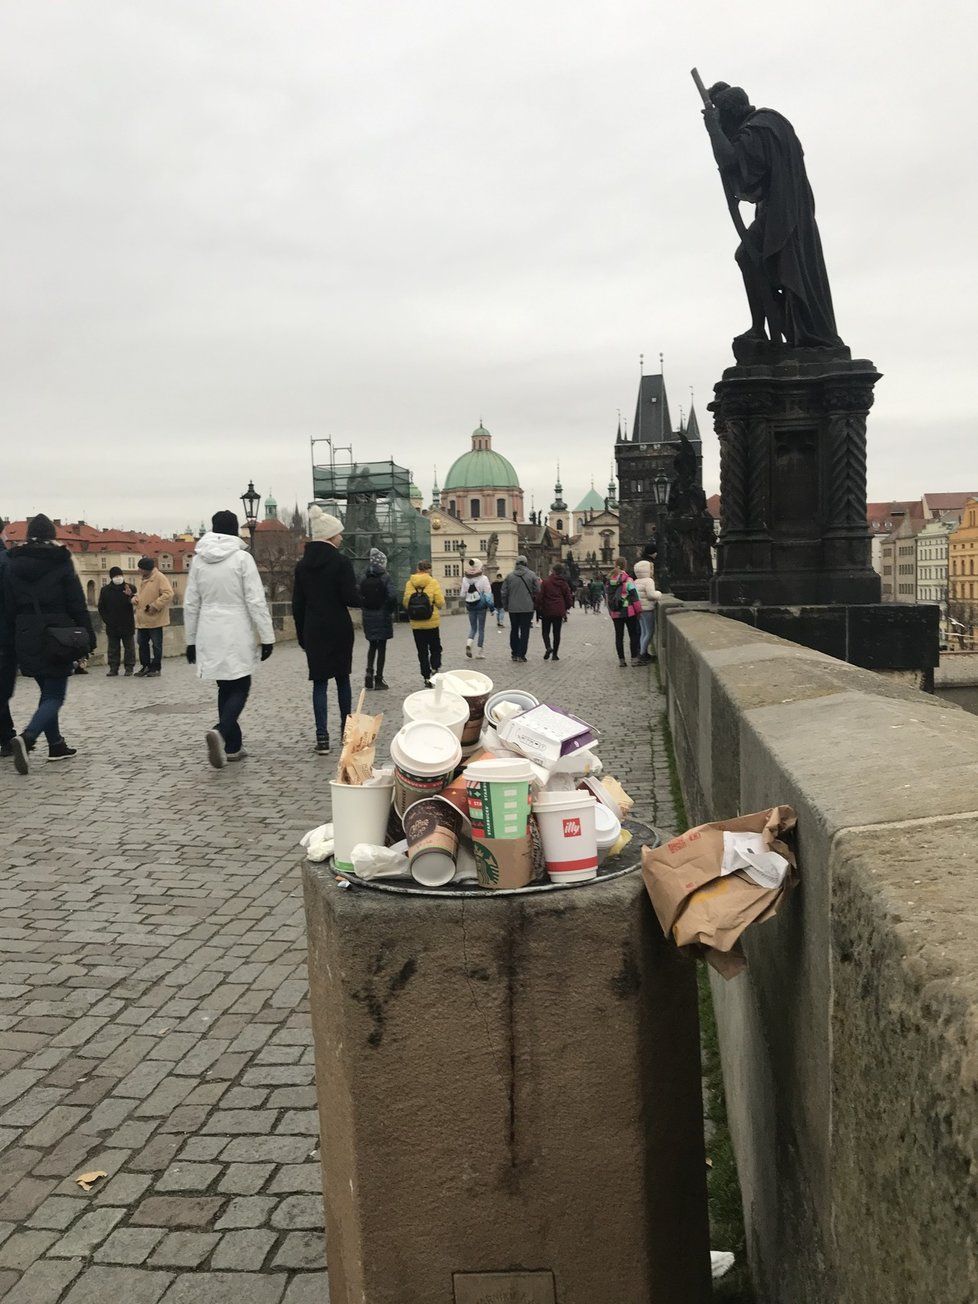 Pražané se v neděli 22. listopadu nedrželi doma a shlukovali se v centru. Podle redaktora Blesk.cz popíjeli kafe, svařák a jedli. Zůstaly po nich plné koše a odpadky na zemi.